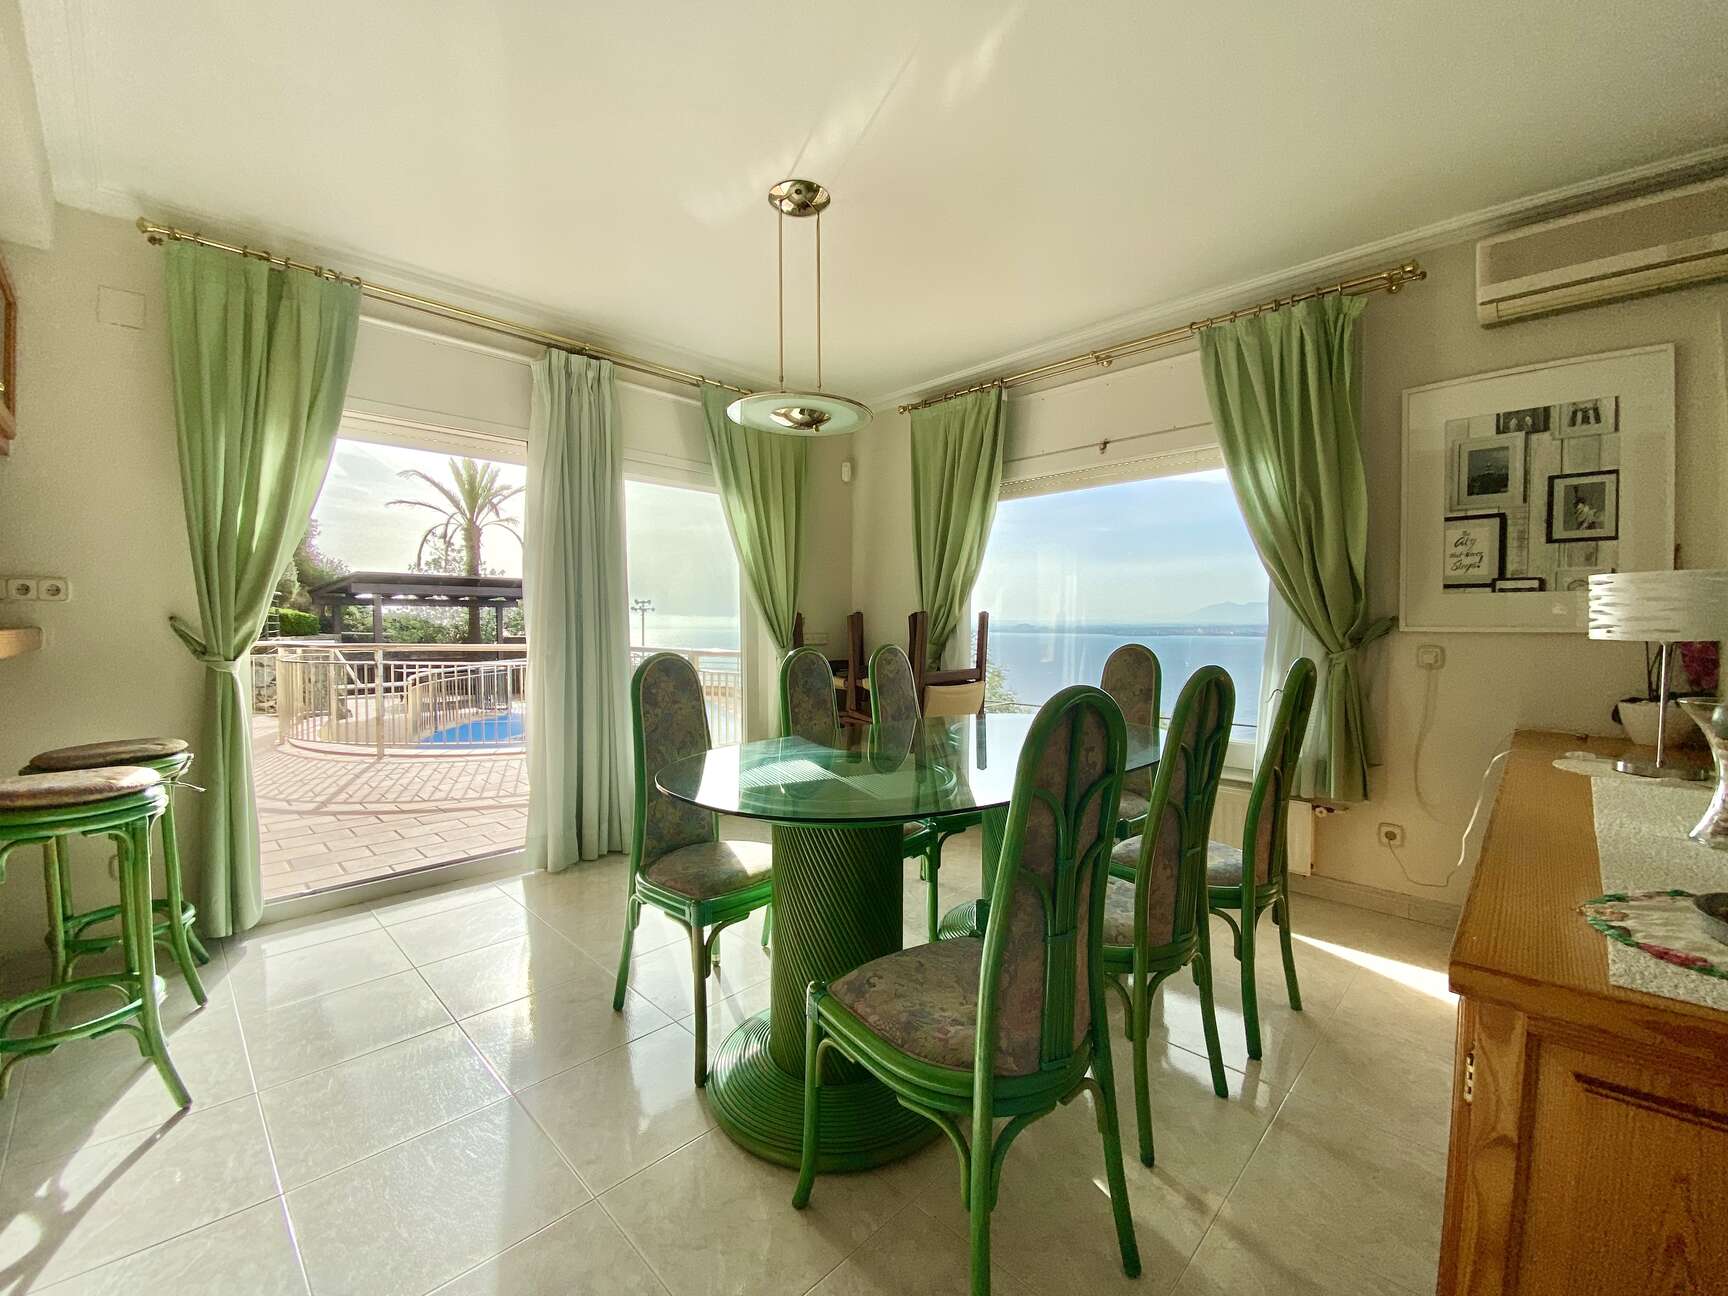 ¡Increíble vista al mar! Espectacular villa con licencia turística en venta en Rosas. ¡Una oportunid